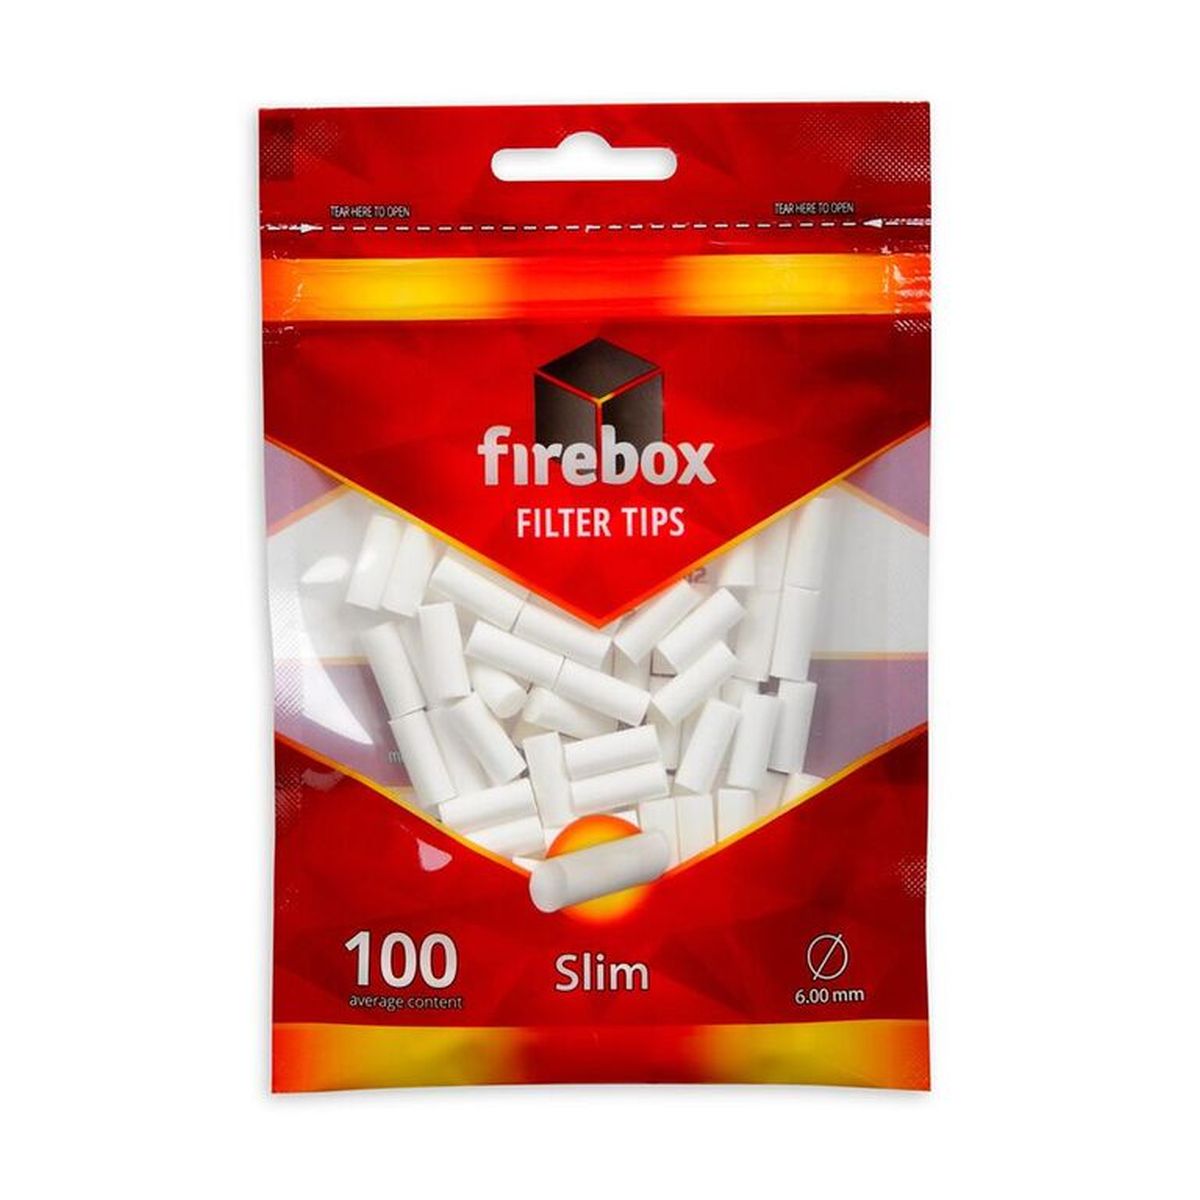 Firebox Firebox Slim Filter Tips 6mm bei www.Tabakring.de kaufen